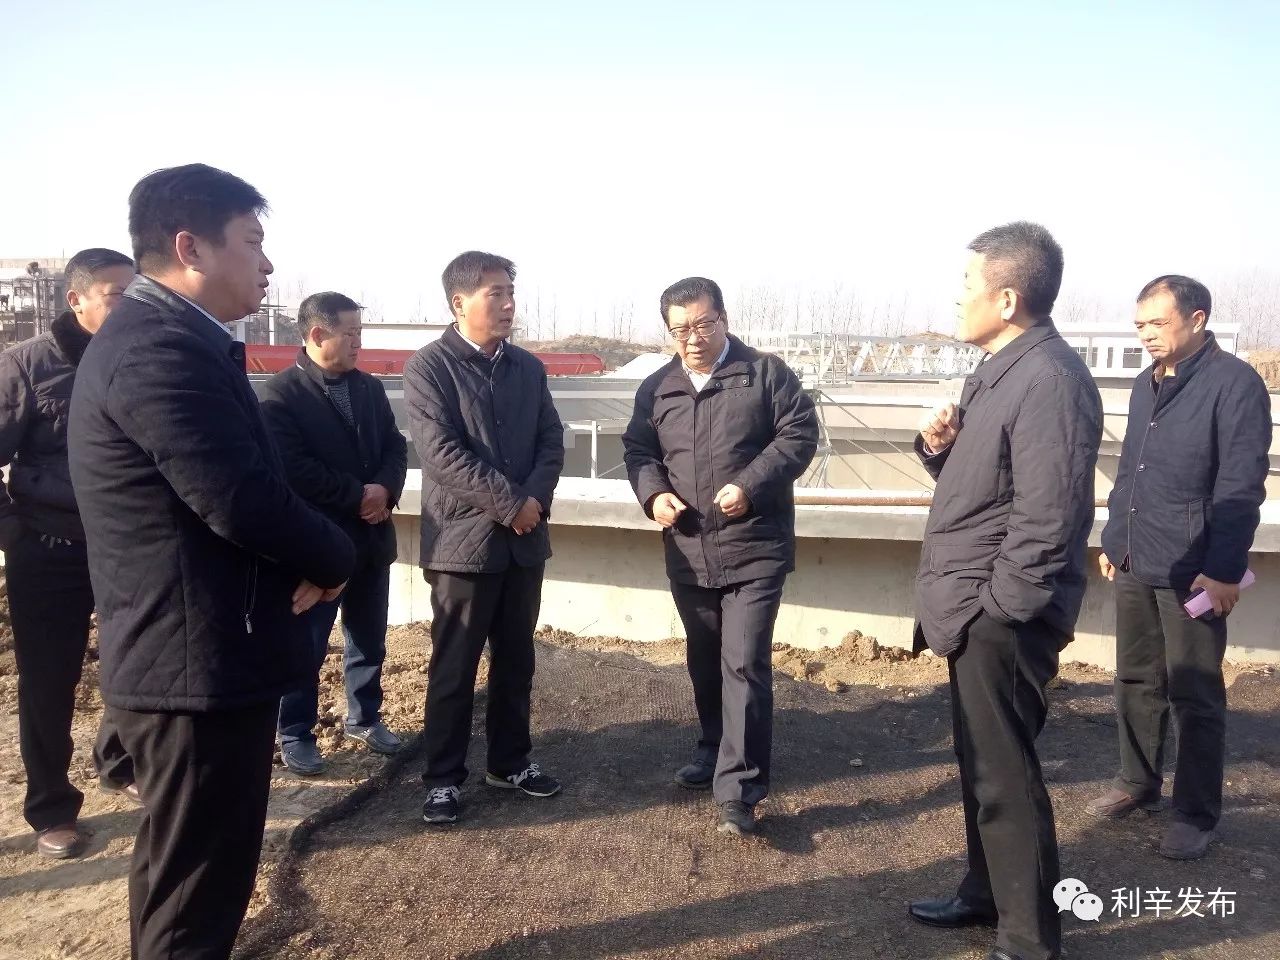 11月24日一大早,市长杜延安就从驻地出发,在县委书记程修略,县委副